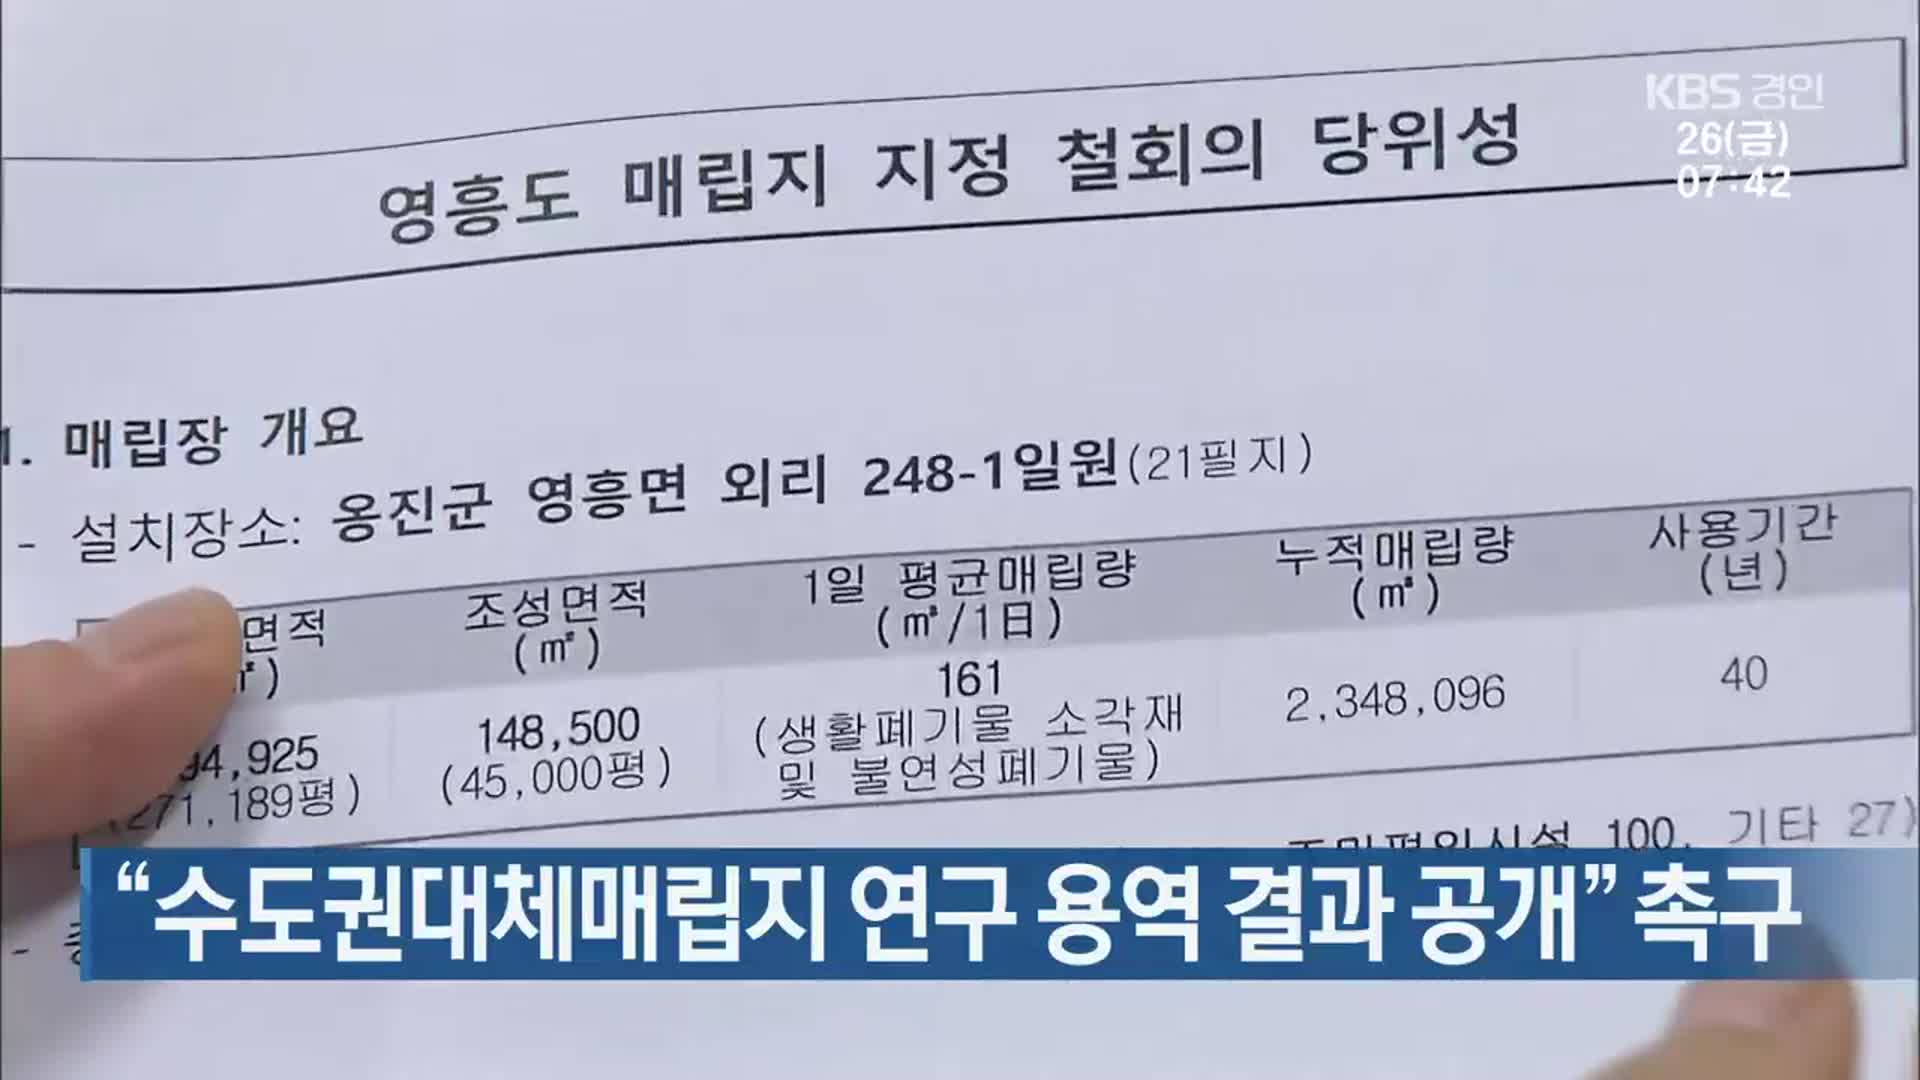 ‘수도권대체매립지 연구 용역 결과 공개’ 촉구